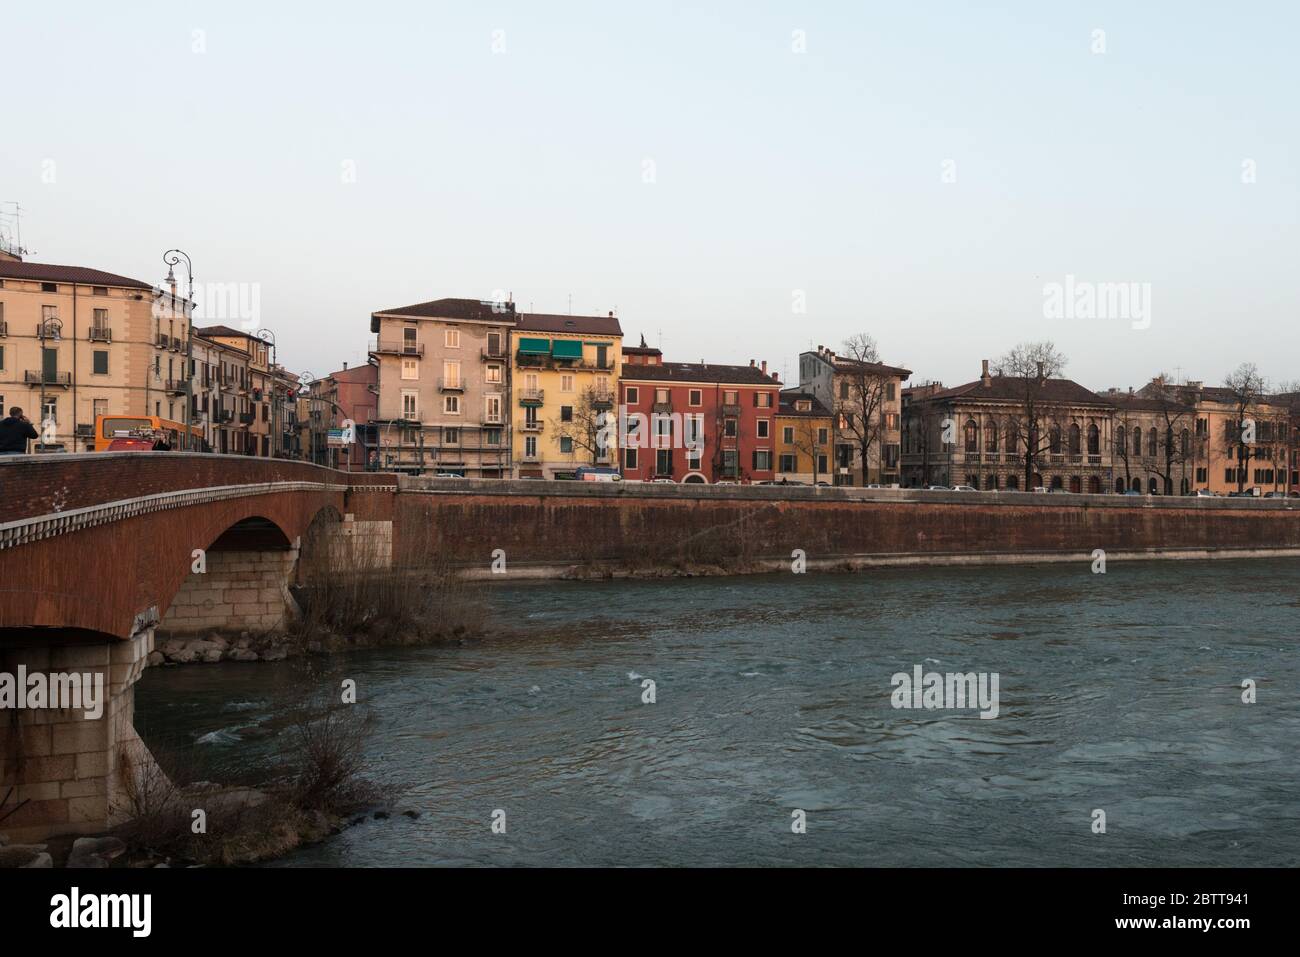 VERONA, ITALIA - 14, MARZO, 2018: Imagen horizontal de gran vista del río Adige y edificios ubicados en Verona, Italia Foto de stock